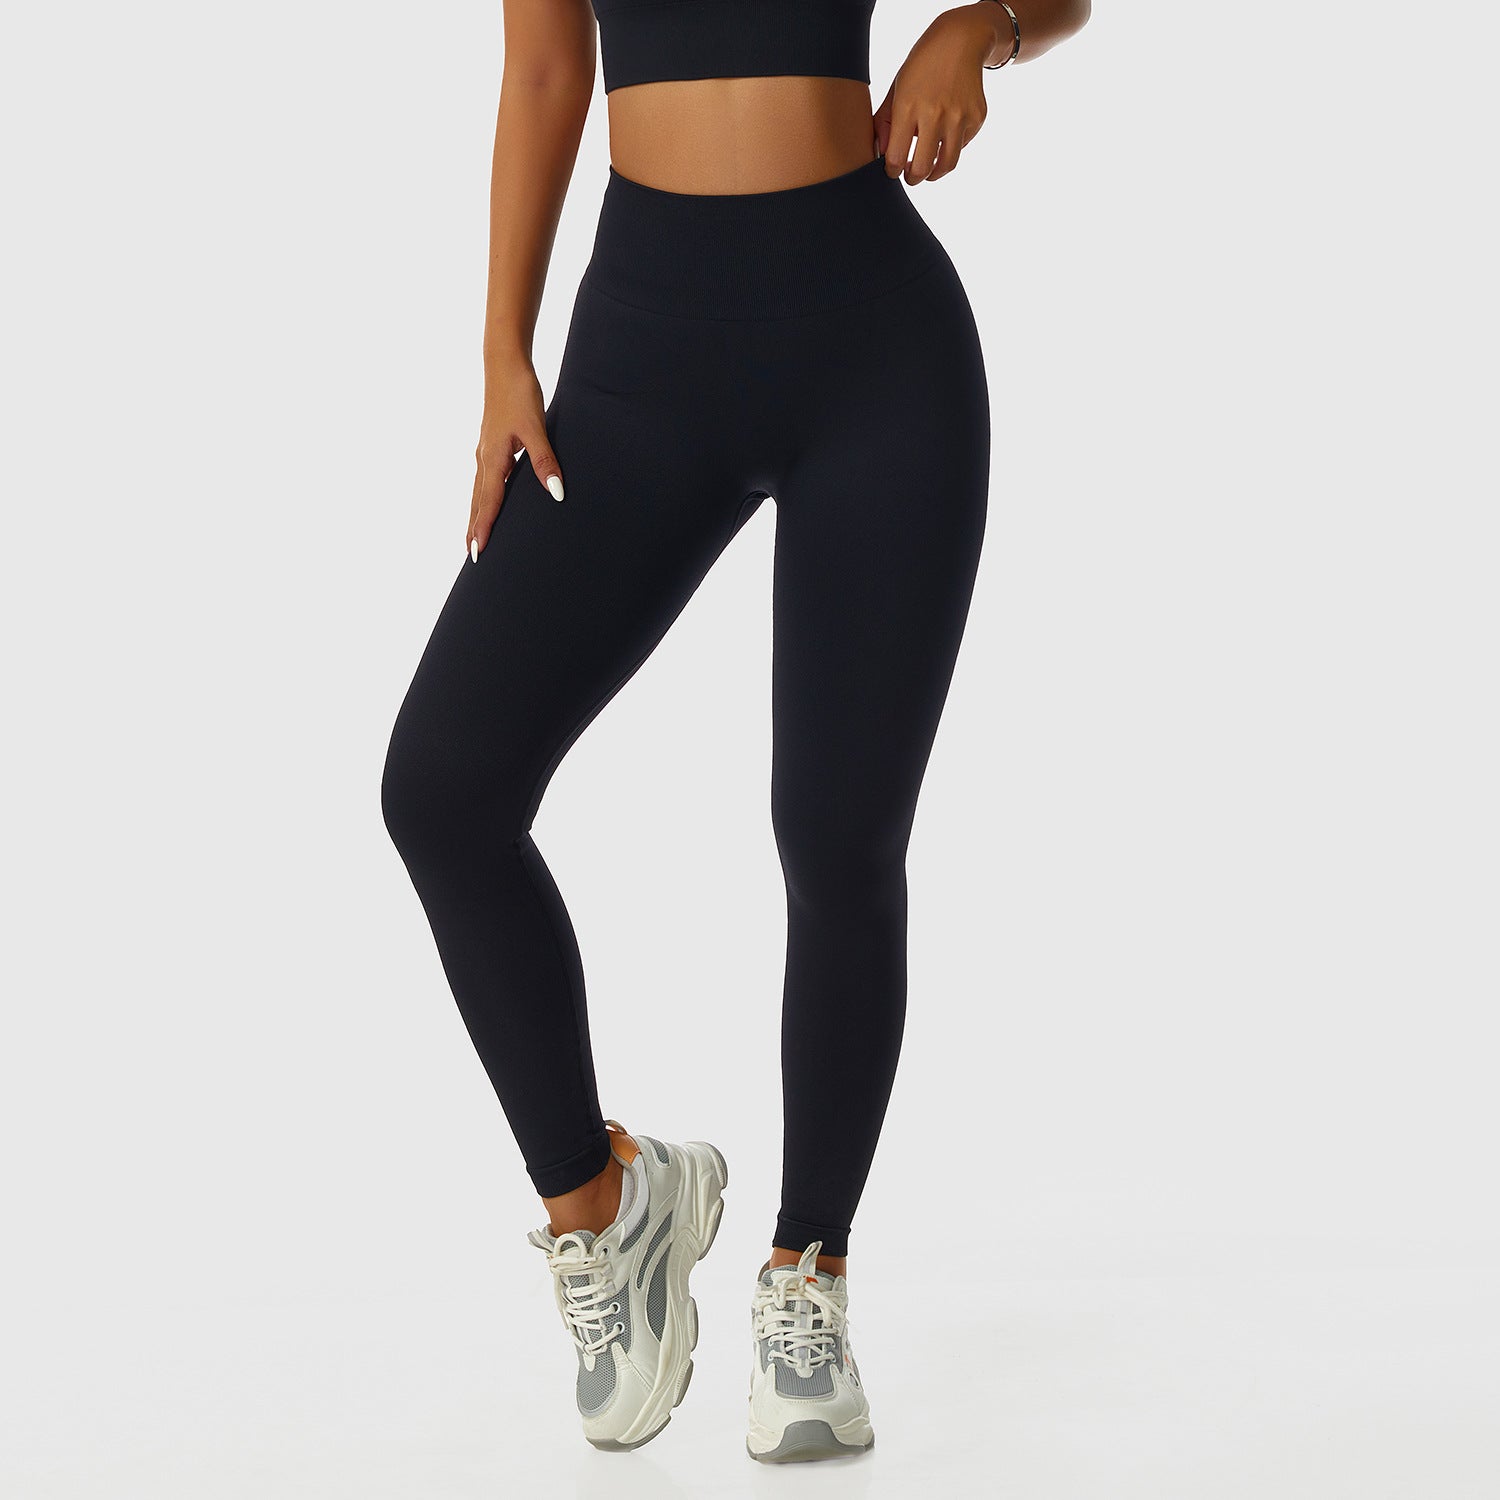 Squat proof high waist workout legging